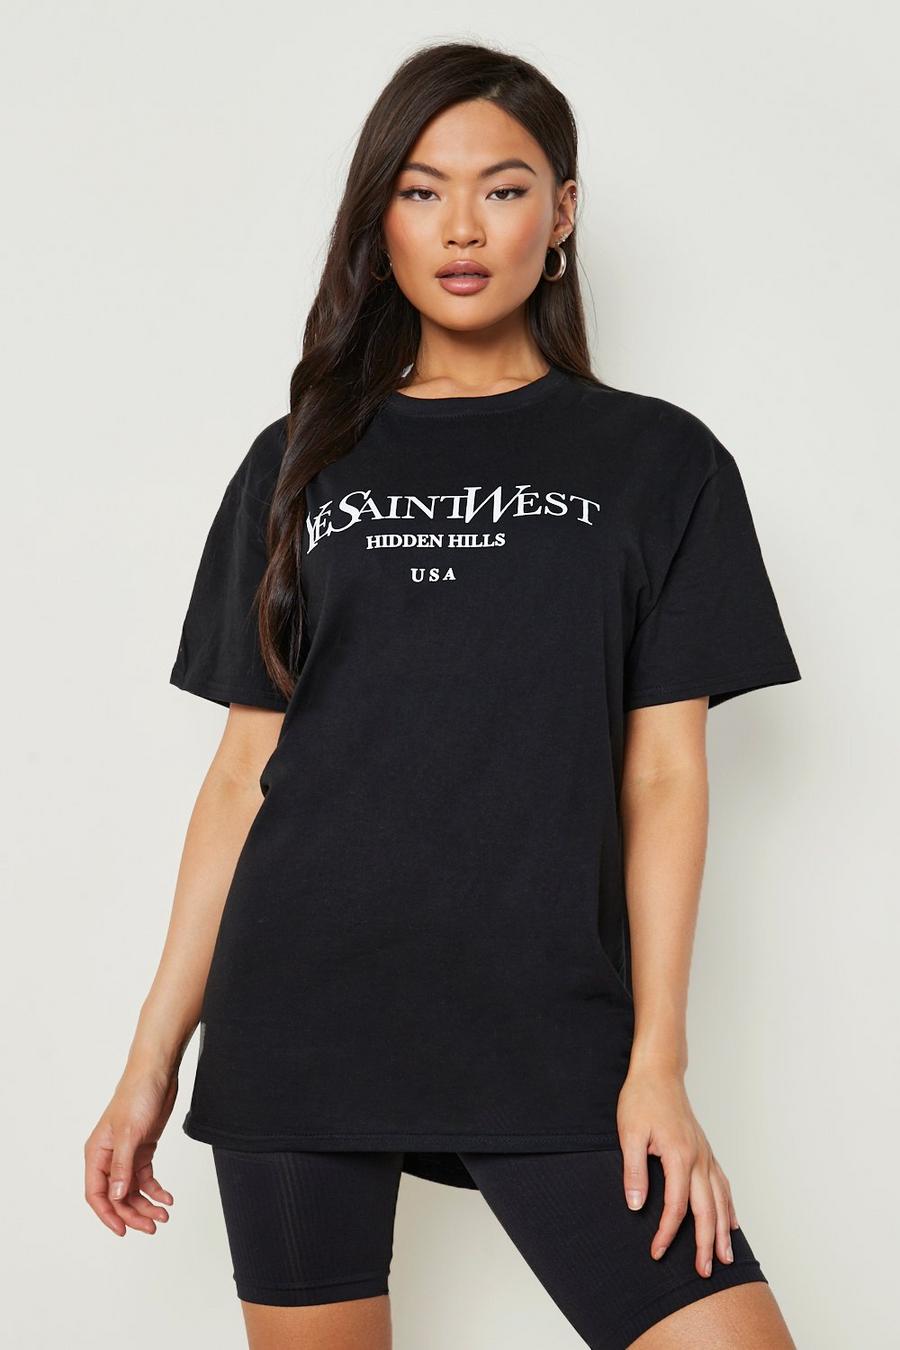 T-shirt oversize "Ye Saint West", Black image number 1